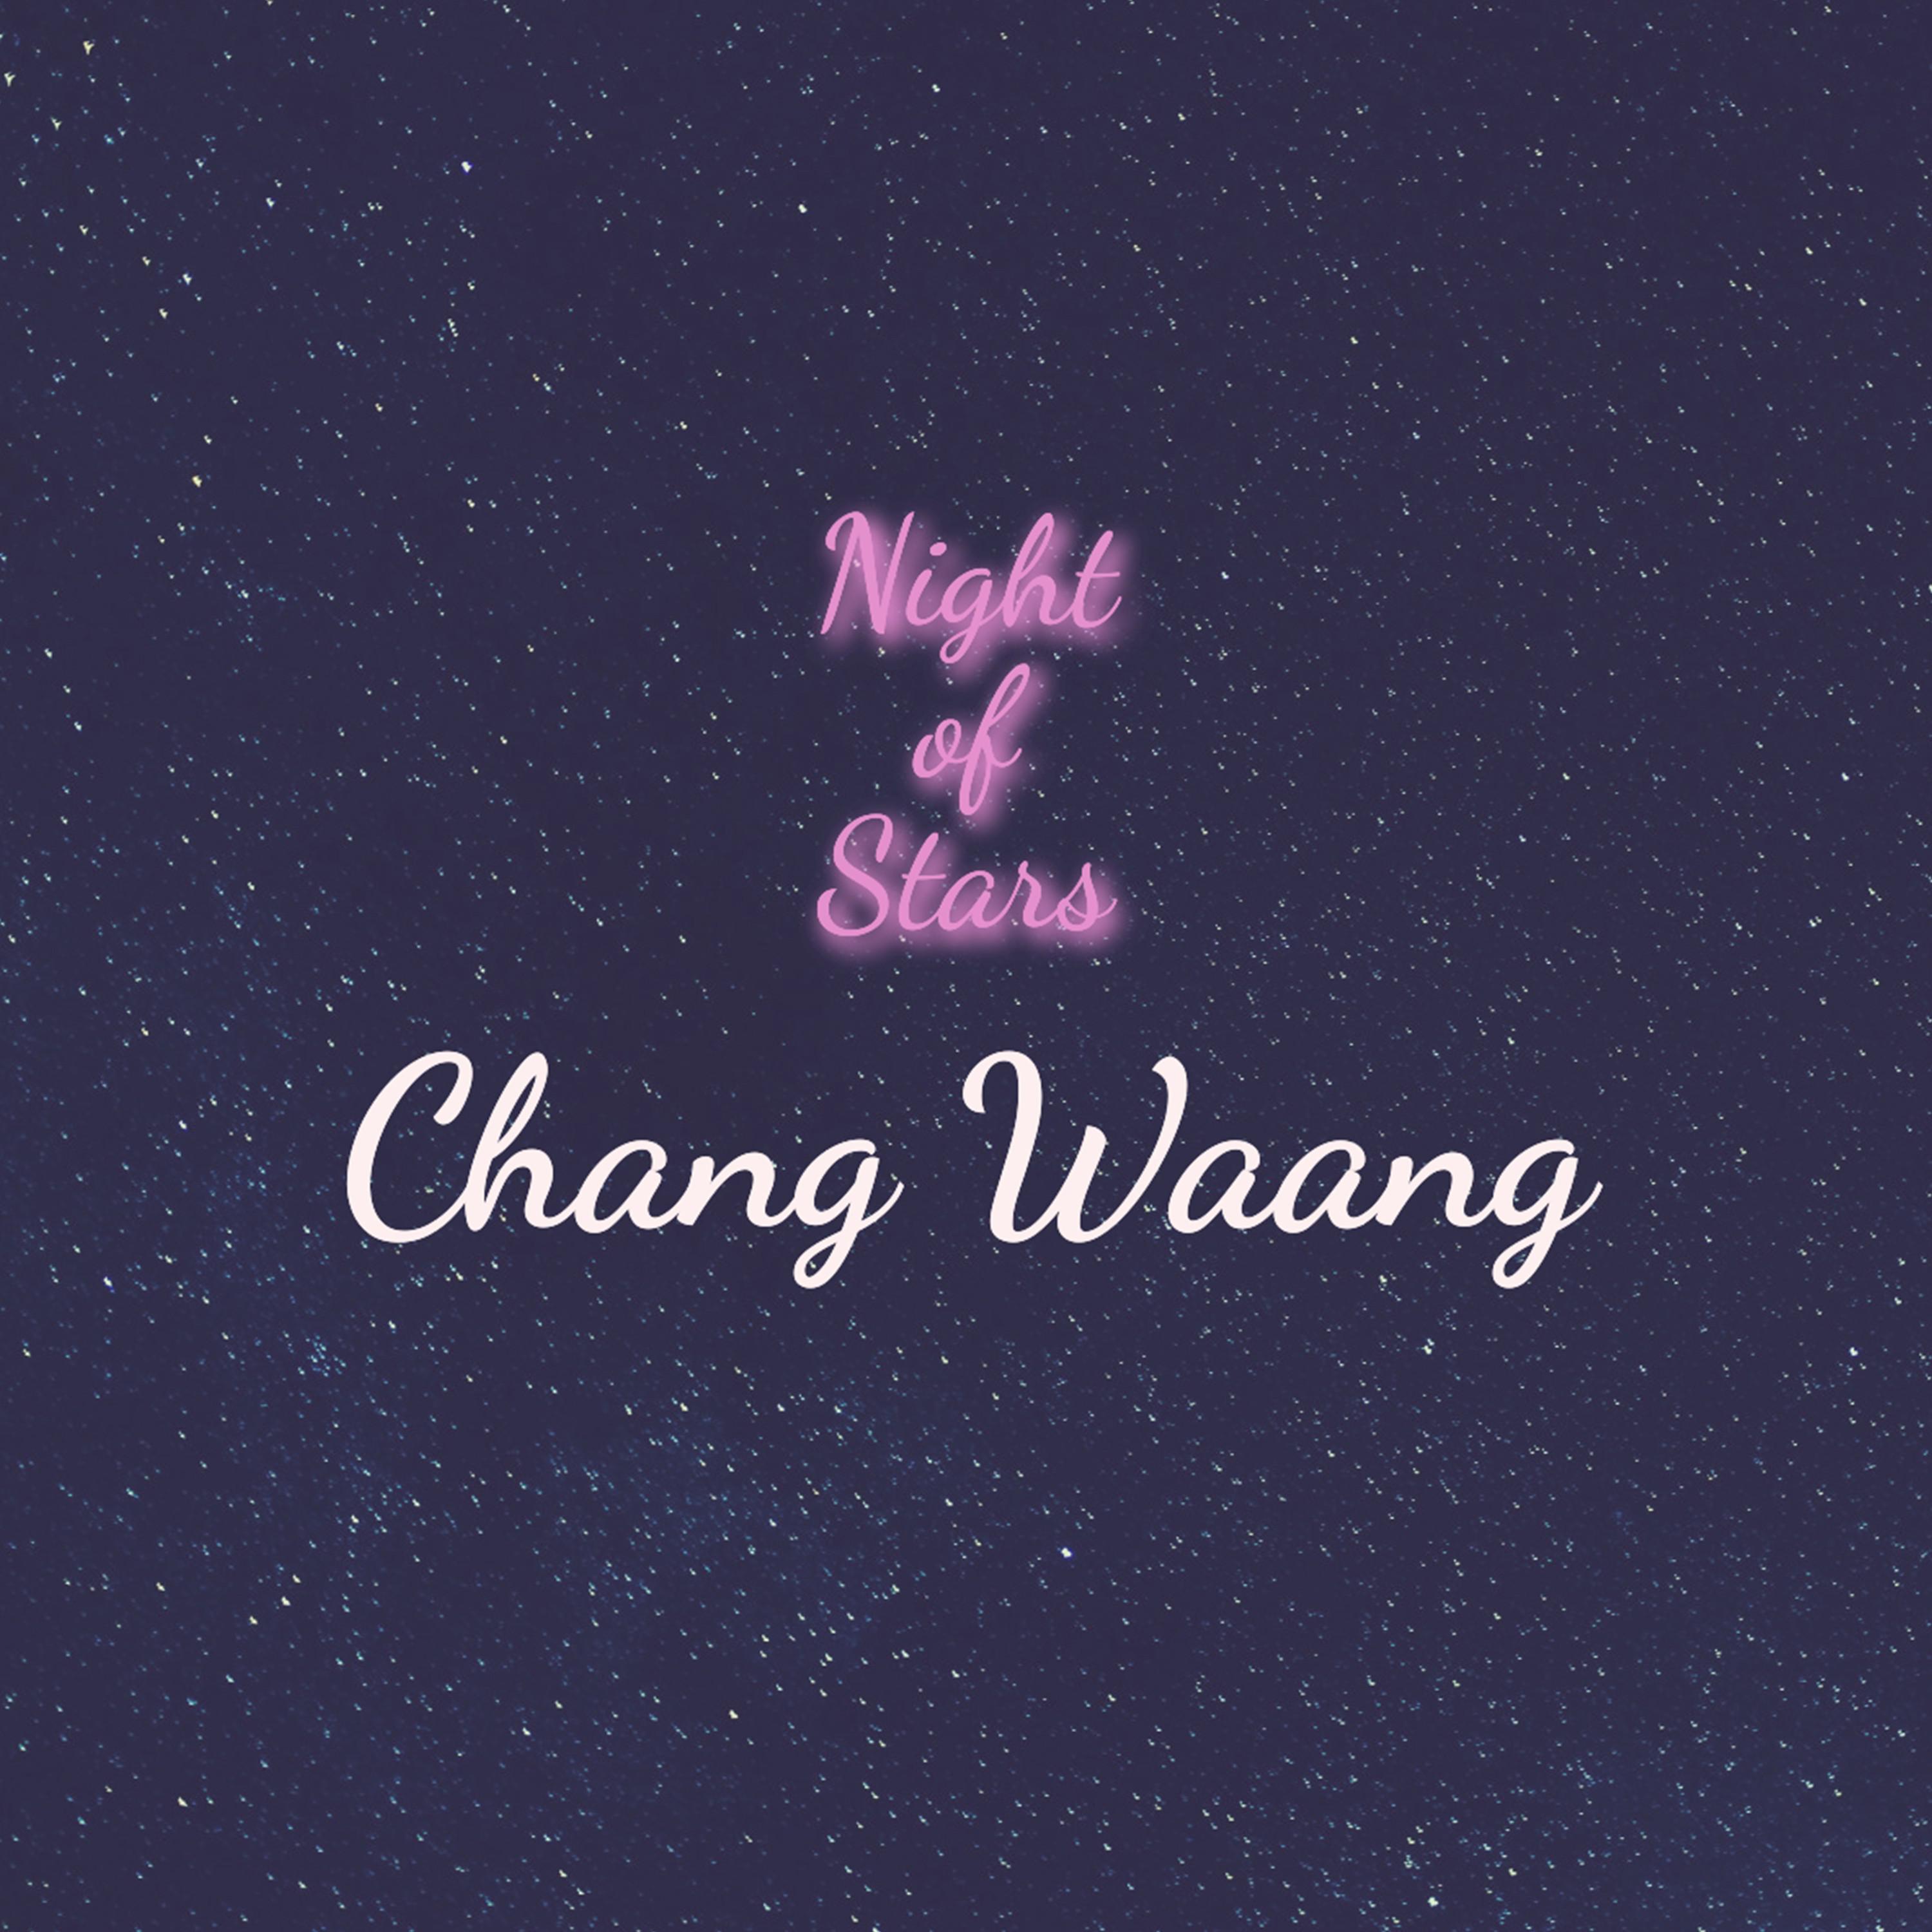 Chang Waang - Moonlight in Shangai